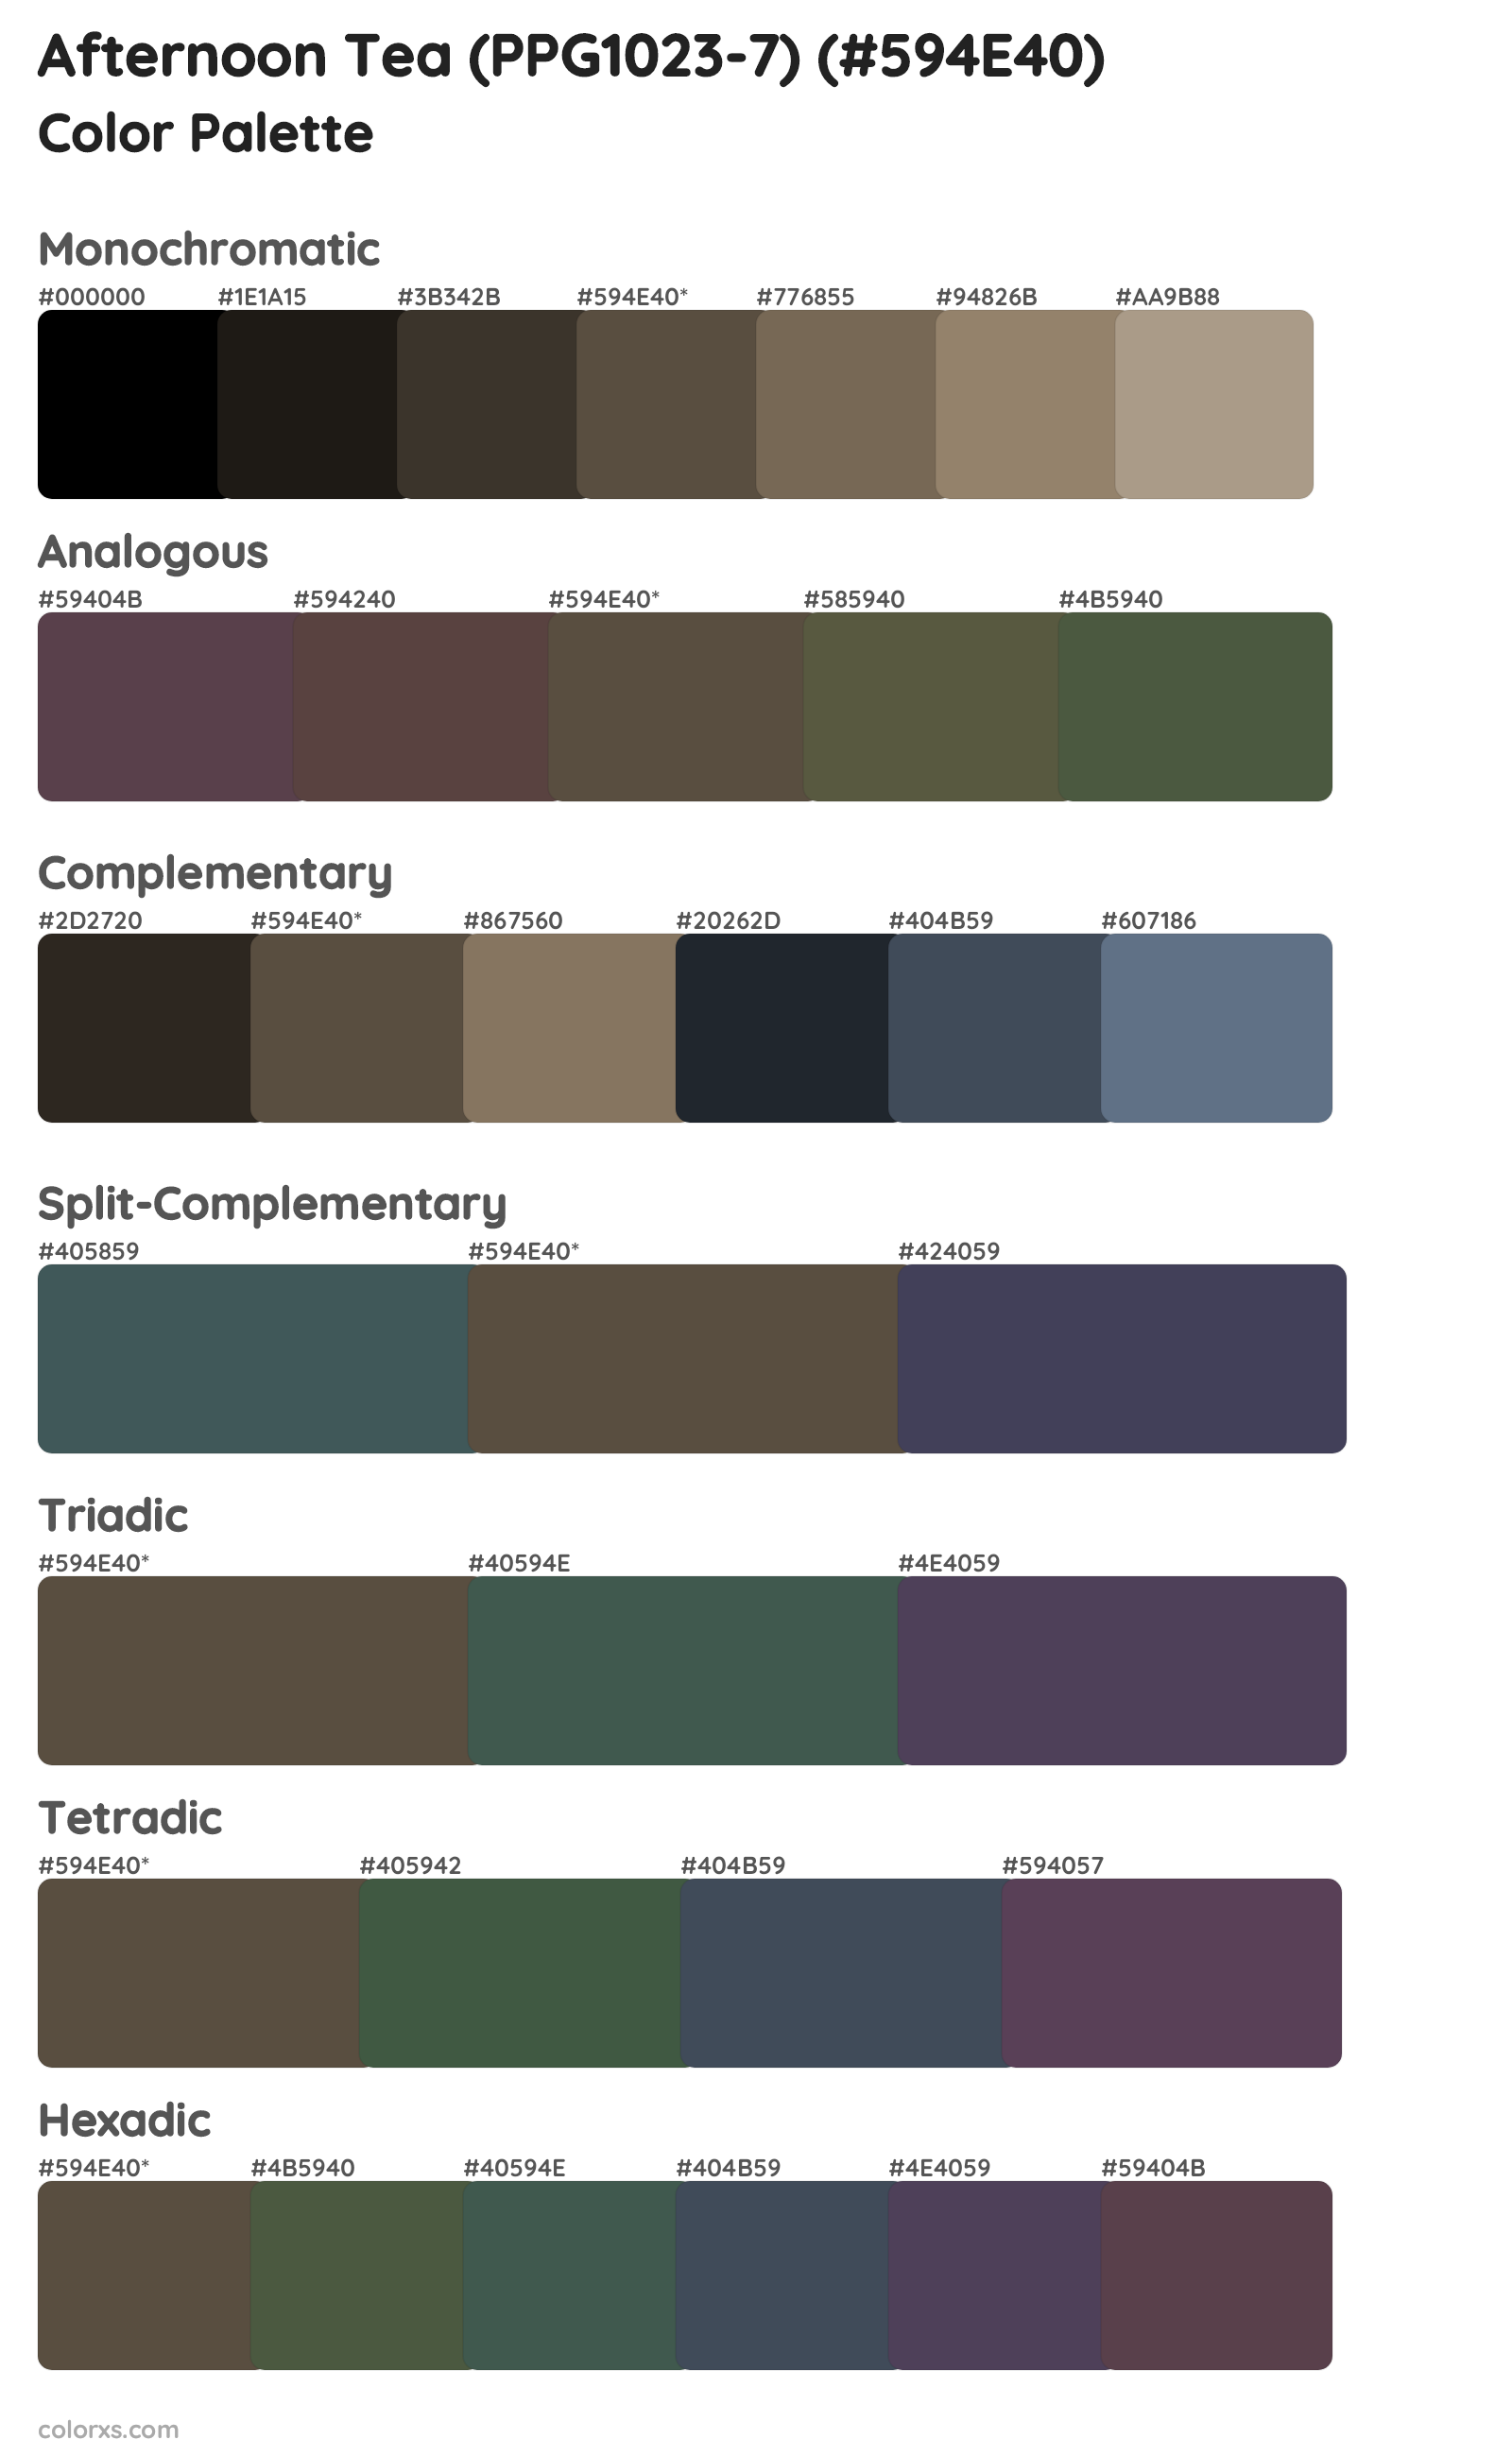 Afternoon Tea (PPG1023-7) Color Scheme Palettes